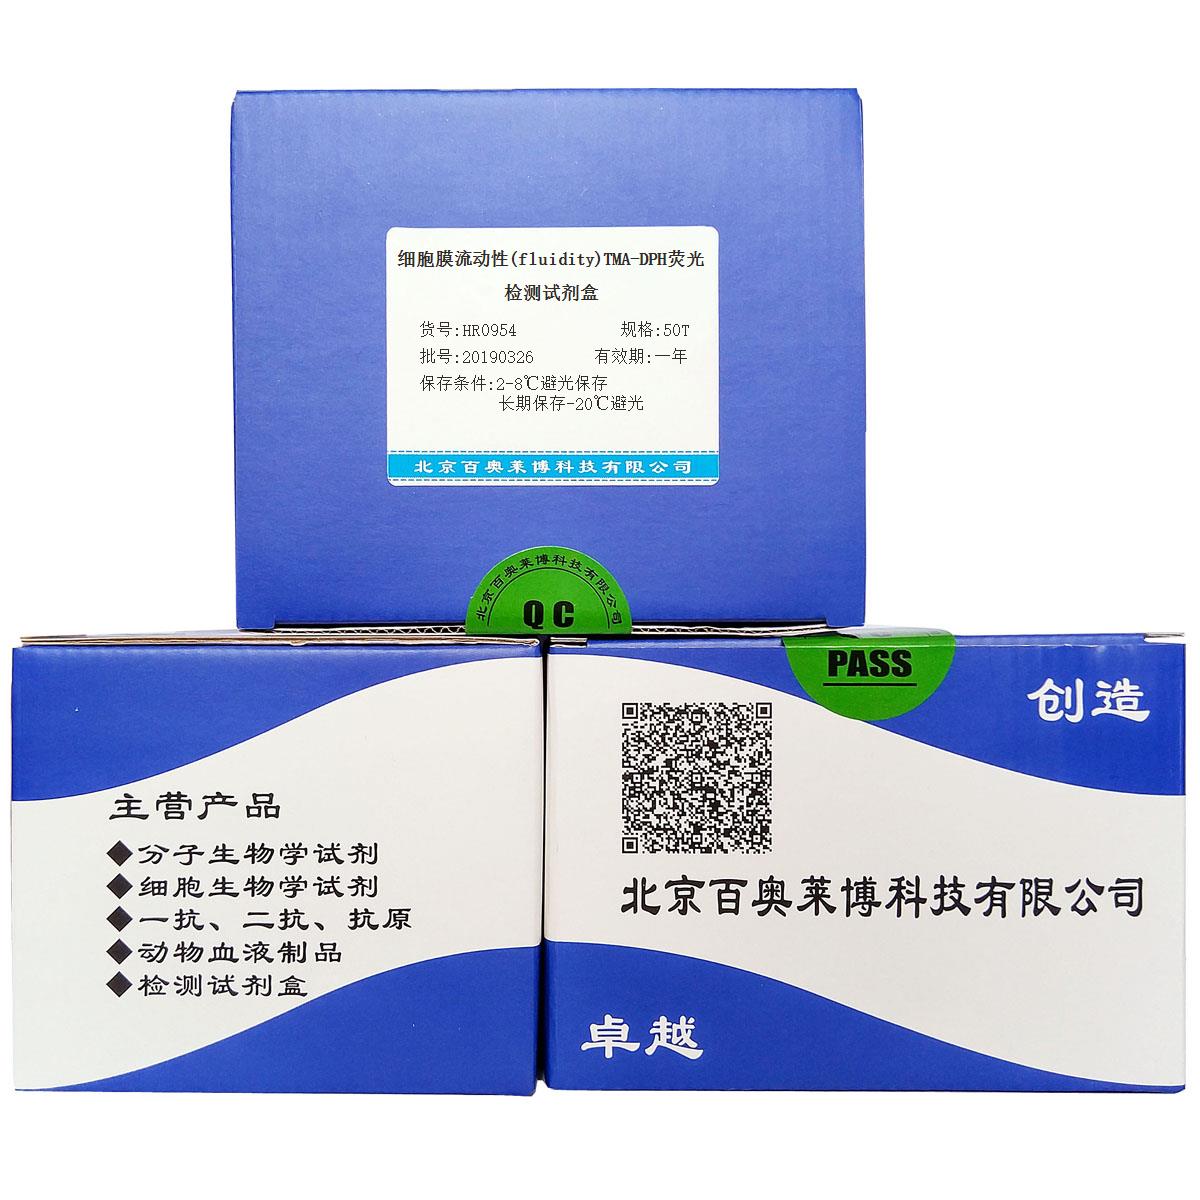 细胞膜流动性(fluidity)TMA-DPH荧光检测试剂盒